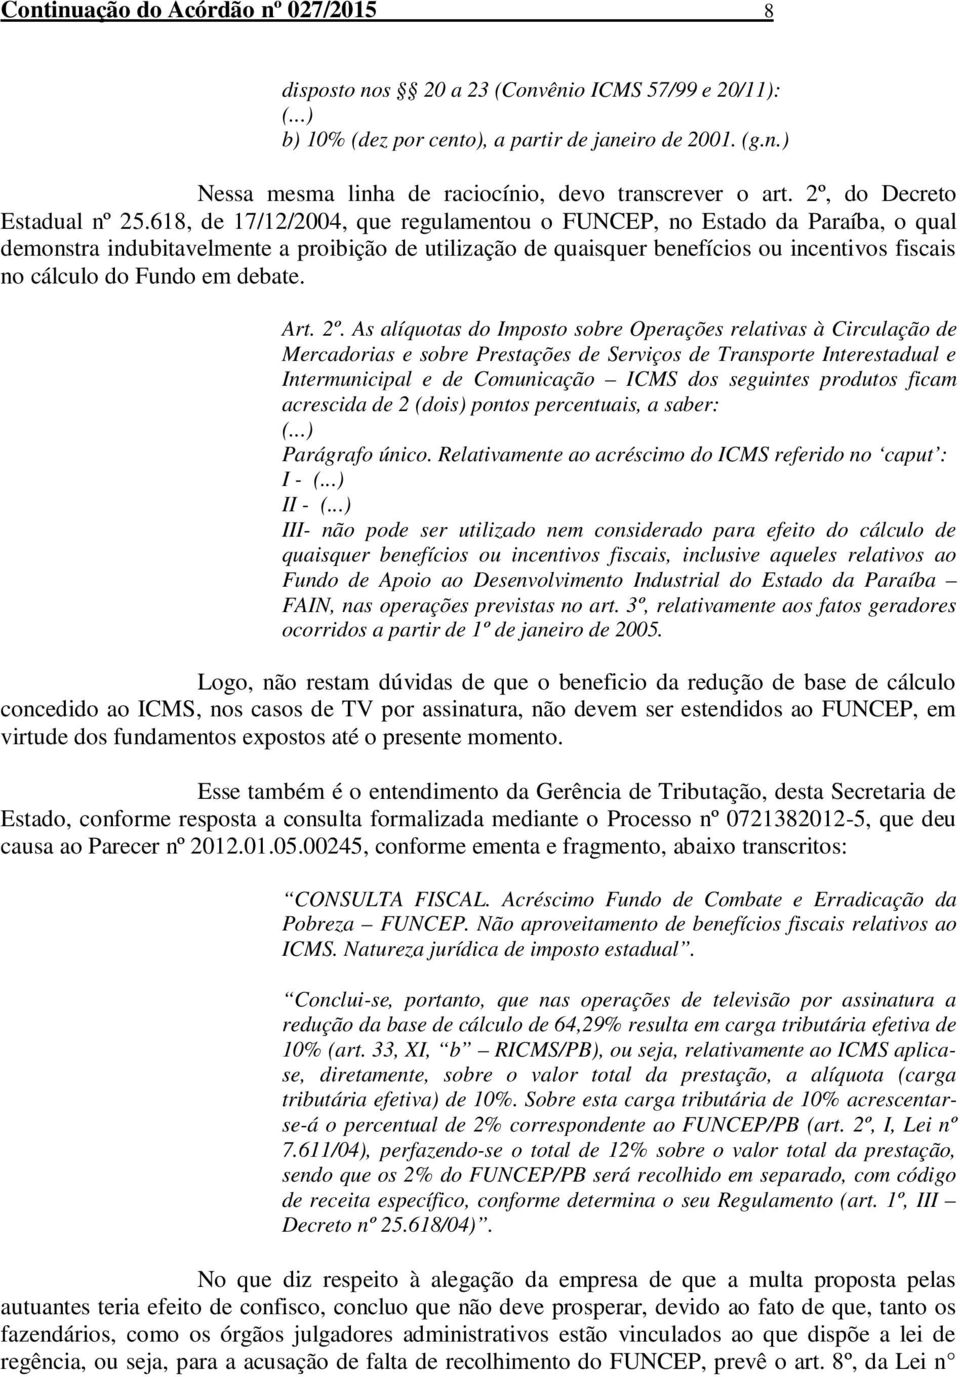 618, de 17/12/2004, que regulamentou o FUNCEP, no Estado da Paraíba, o qual demonstra indubitavelmente a proibição de utilização de quaisquer benefícios ou incentivos fiscais no cálculo do Fundo em